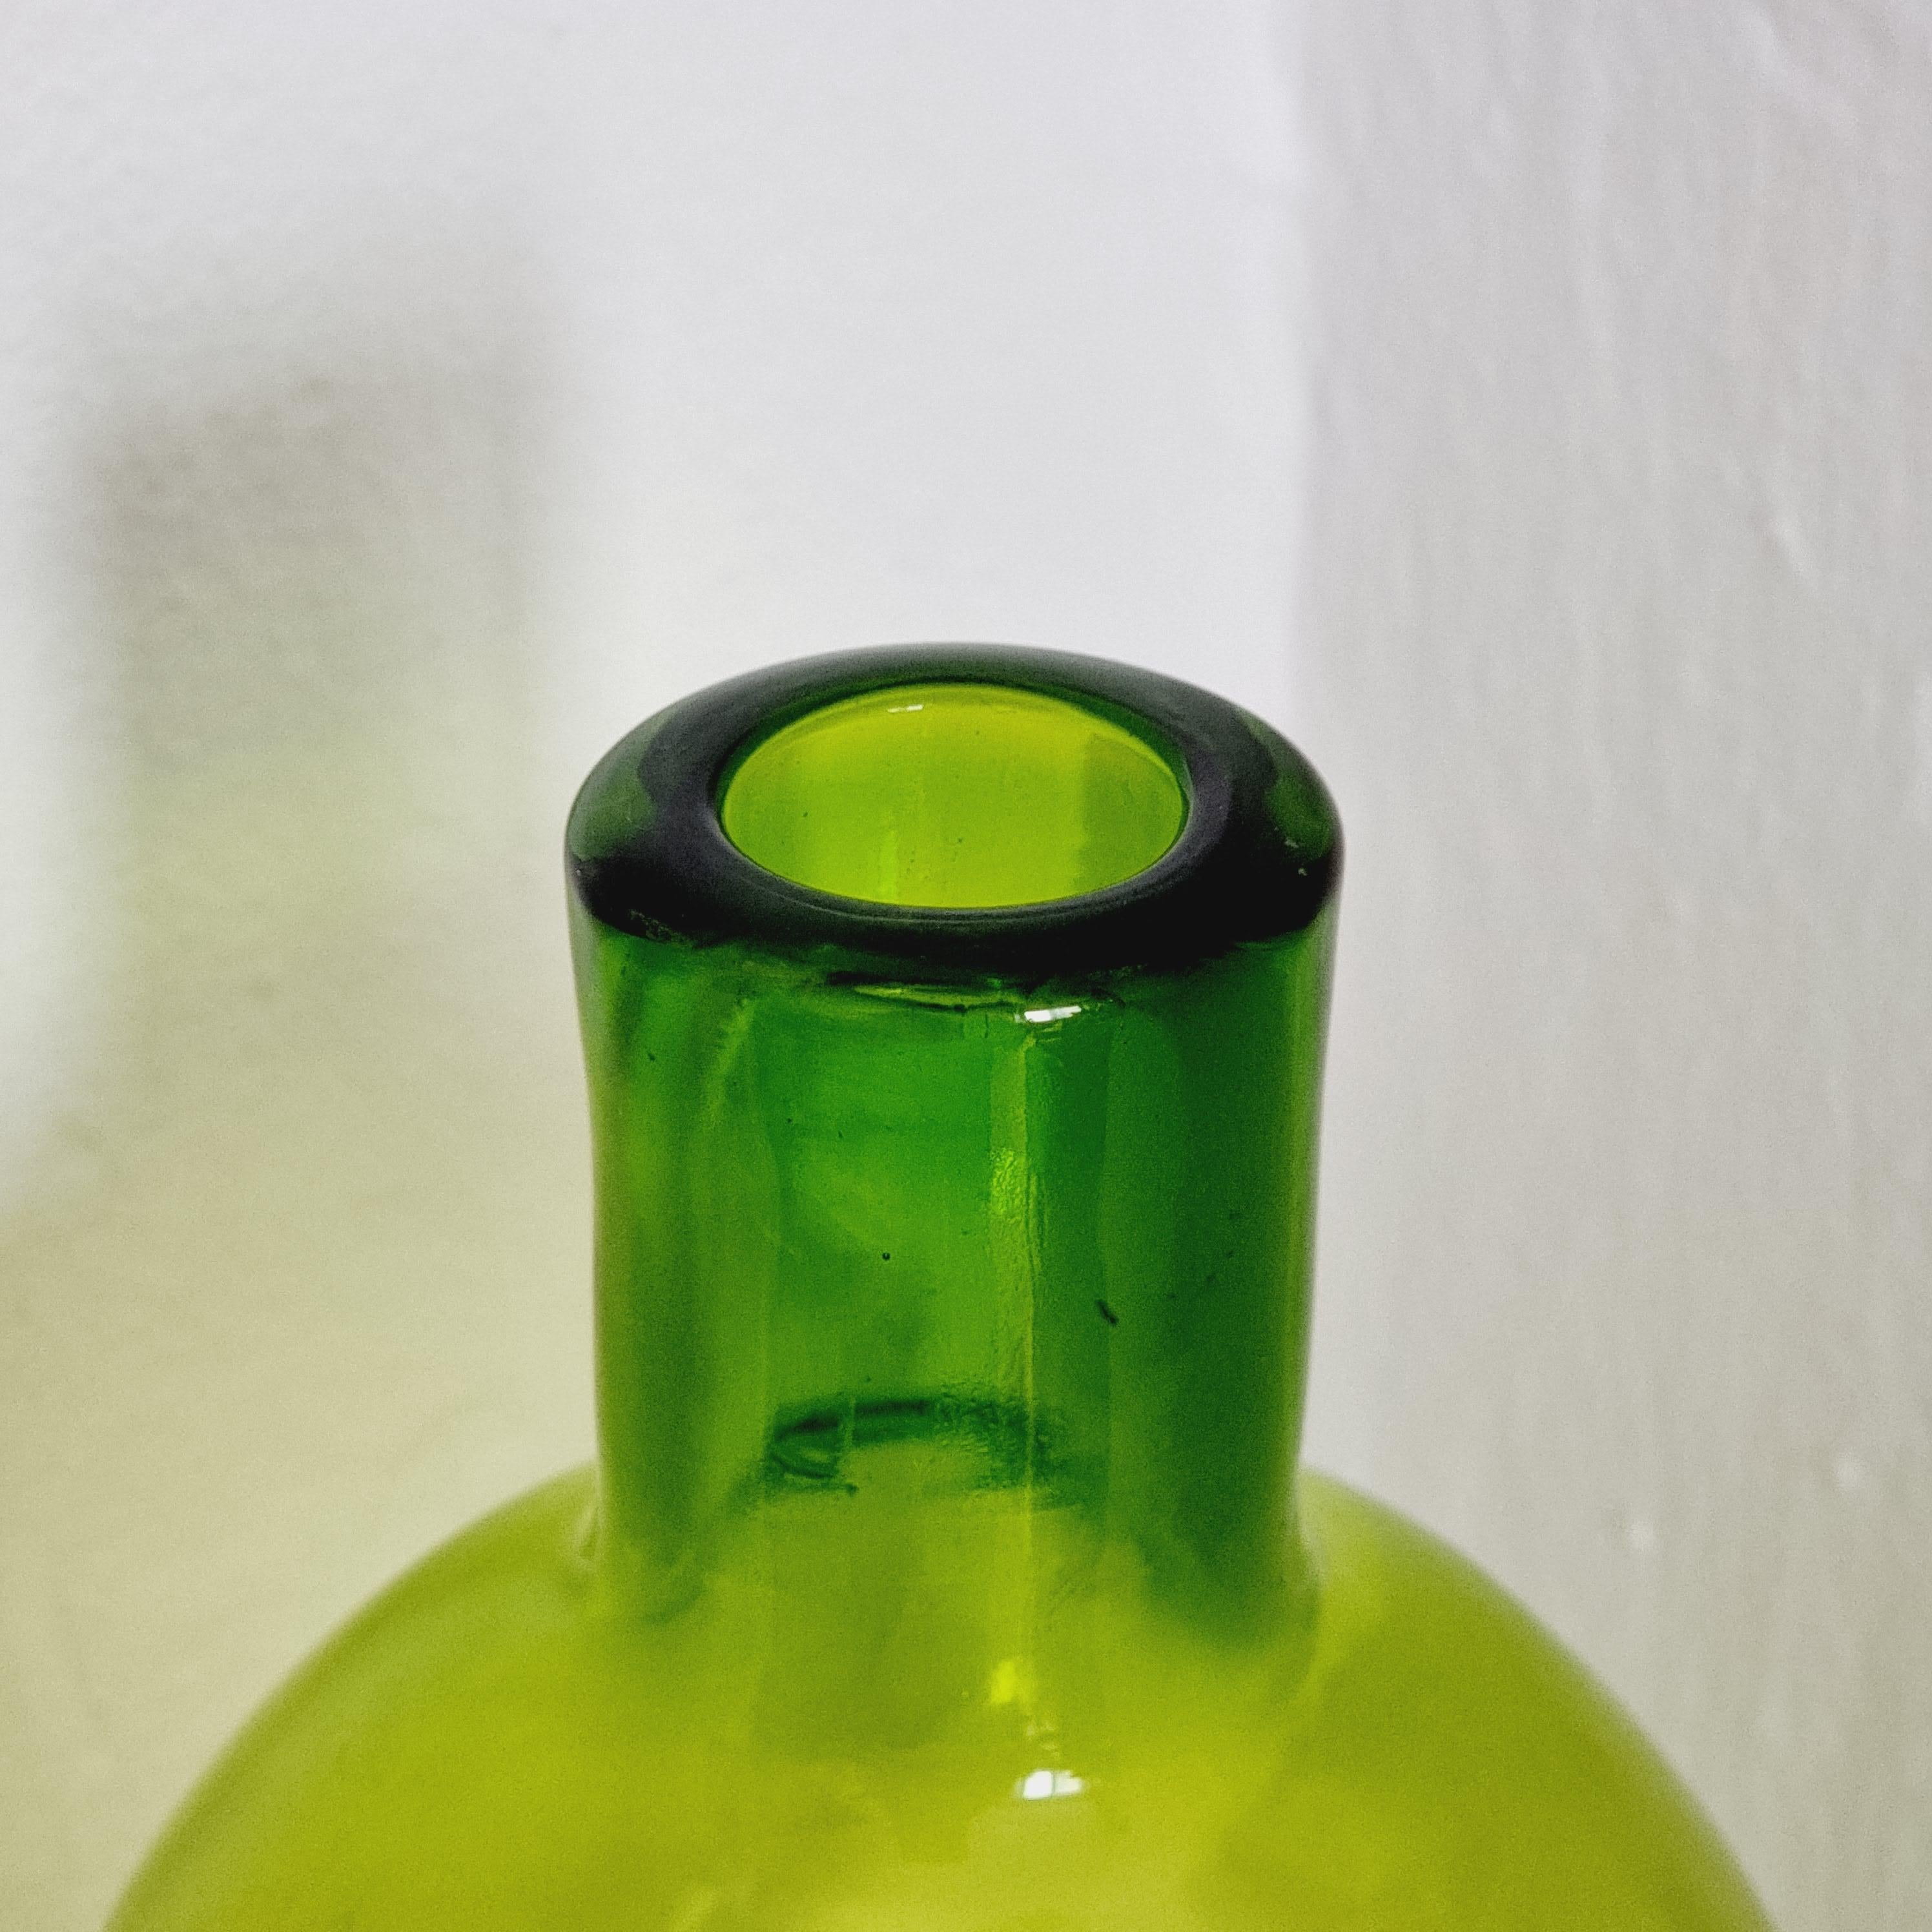 Un grand vase en verre vert pomme conçu par Margareta Hennix pour Reijmyre Suède années 1990. 

Signé M. Hennix

En bon état. 